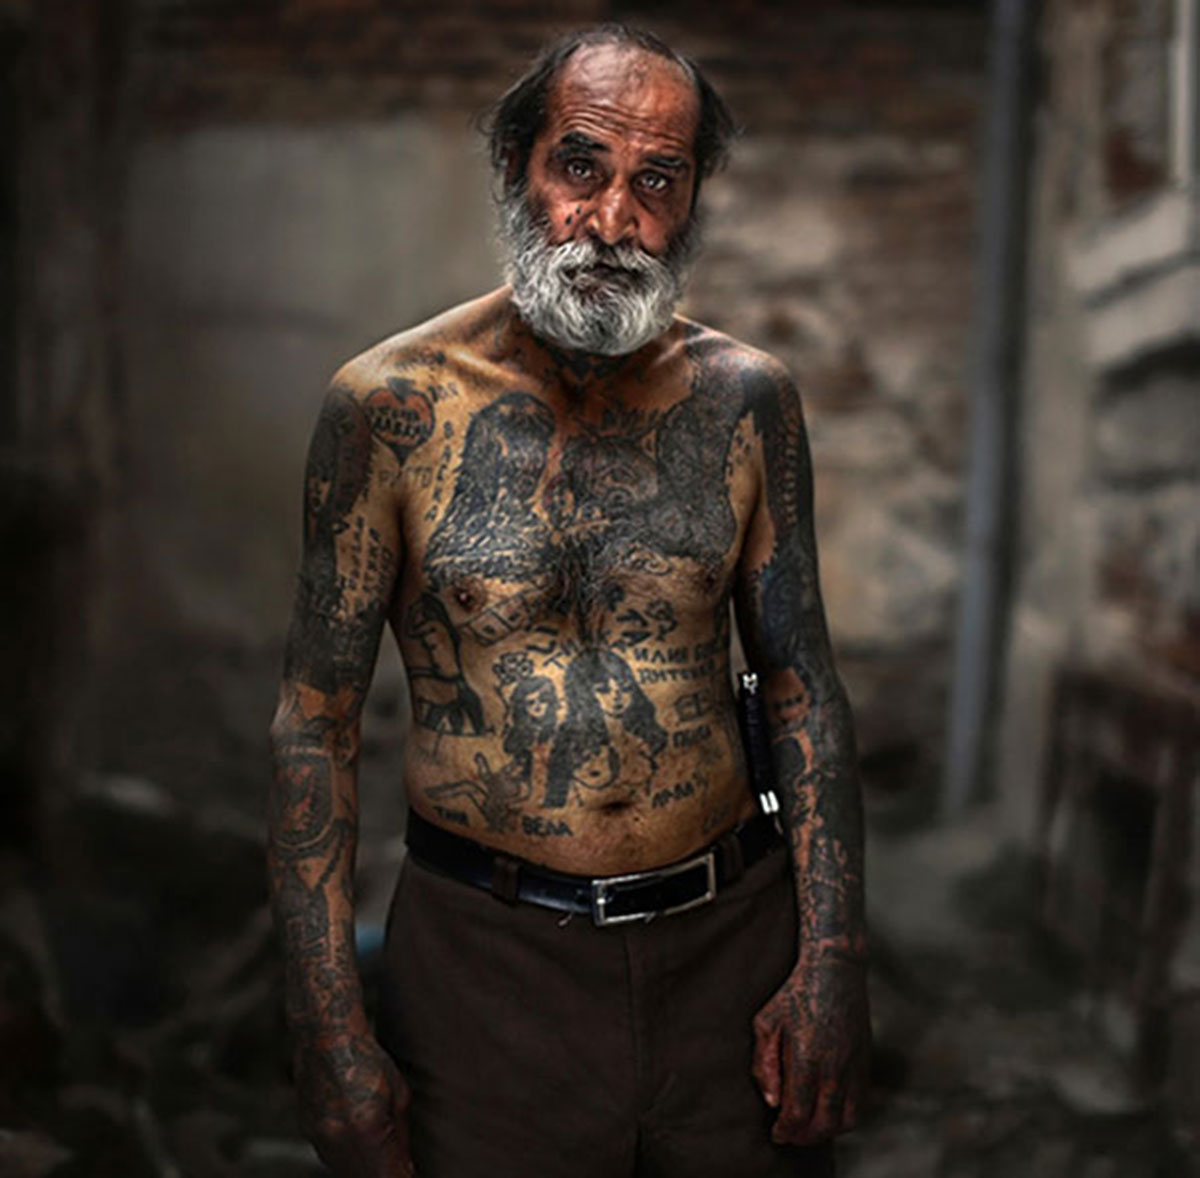 tattooed-elderly-people-9__605